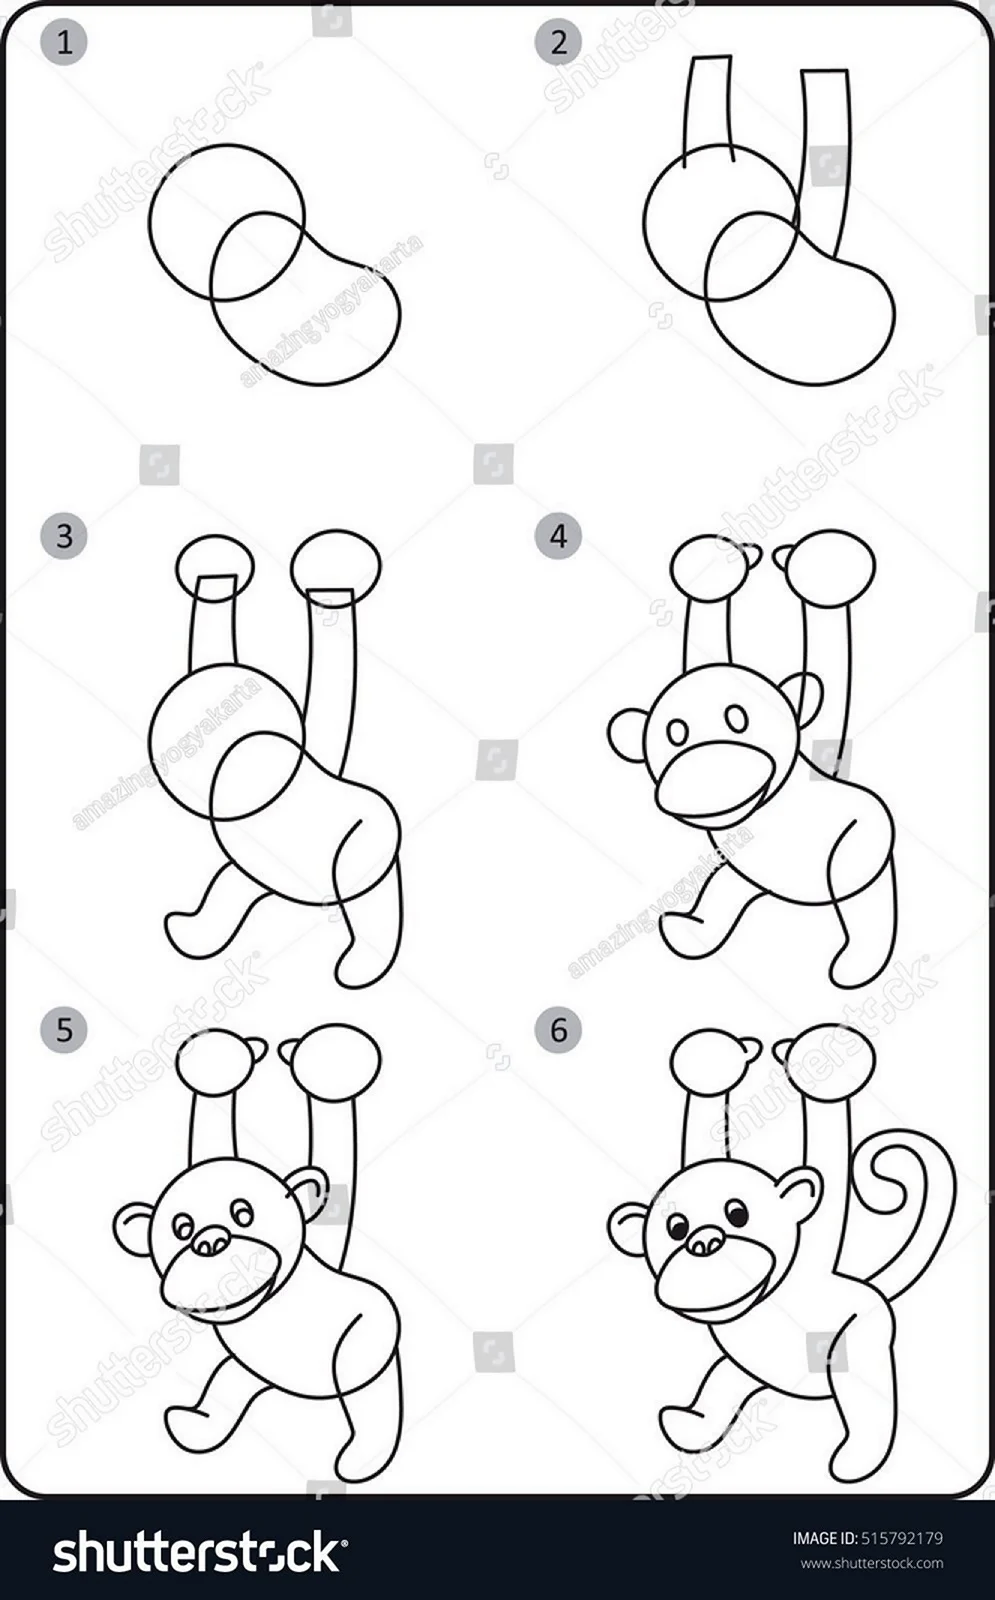 Схема рисования обезьяны для дошкольников